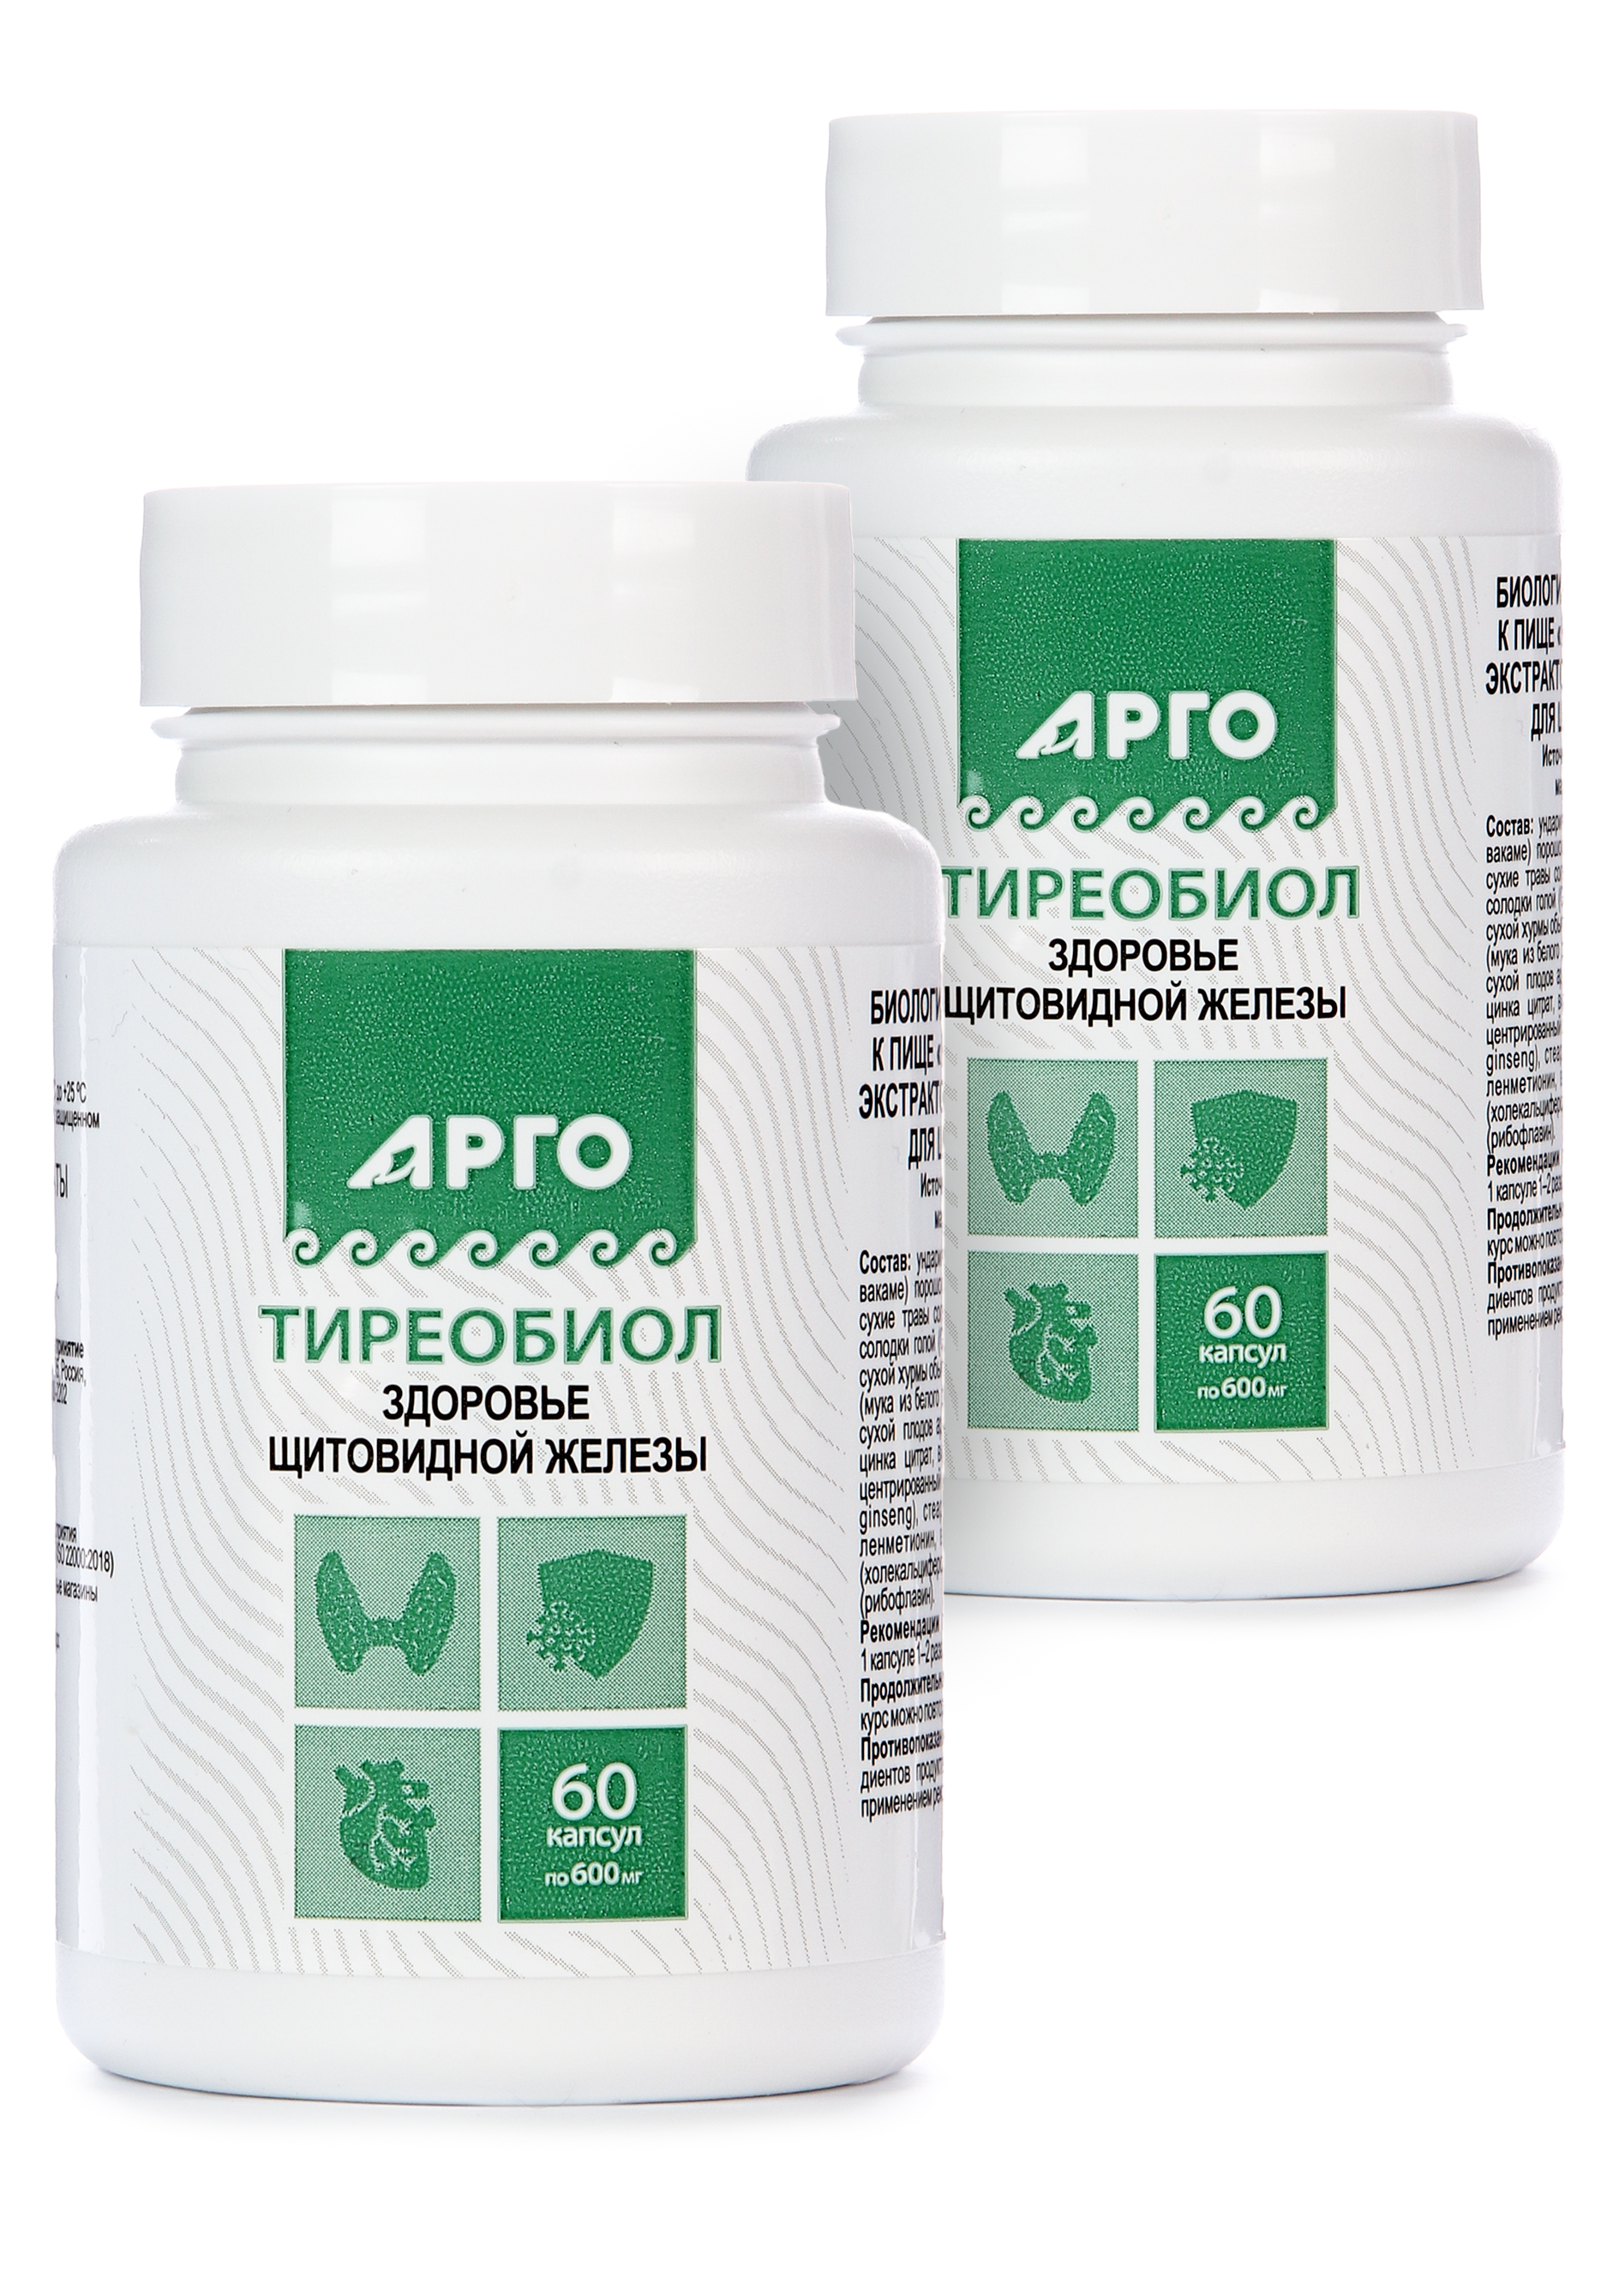 Комплекс для щитовидной железы, 2 шт. Природная аптека Сибири